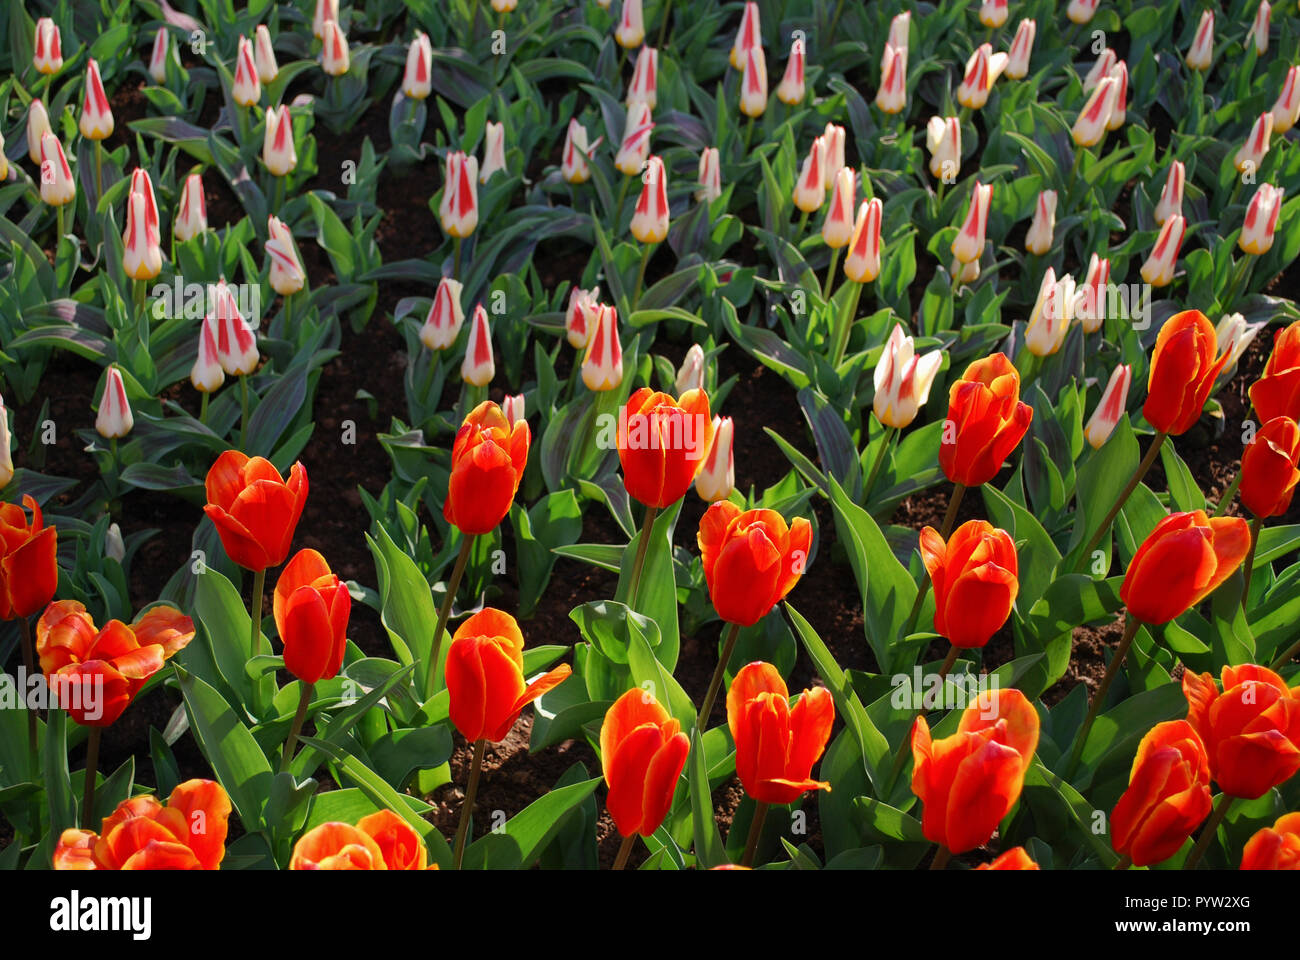 Kaufmanniana frühe Ernte und Rosa Diamant (Single Spät Gruppe) Tulpen im Park gewachsen. Frühling in den Niederlanden. Stockfoto